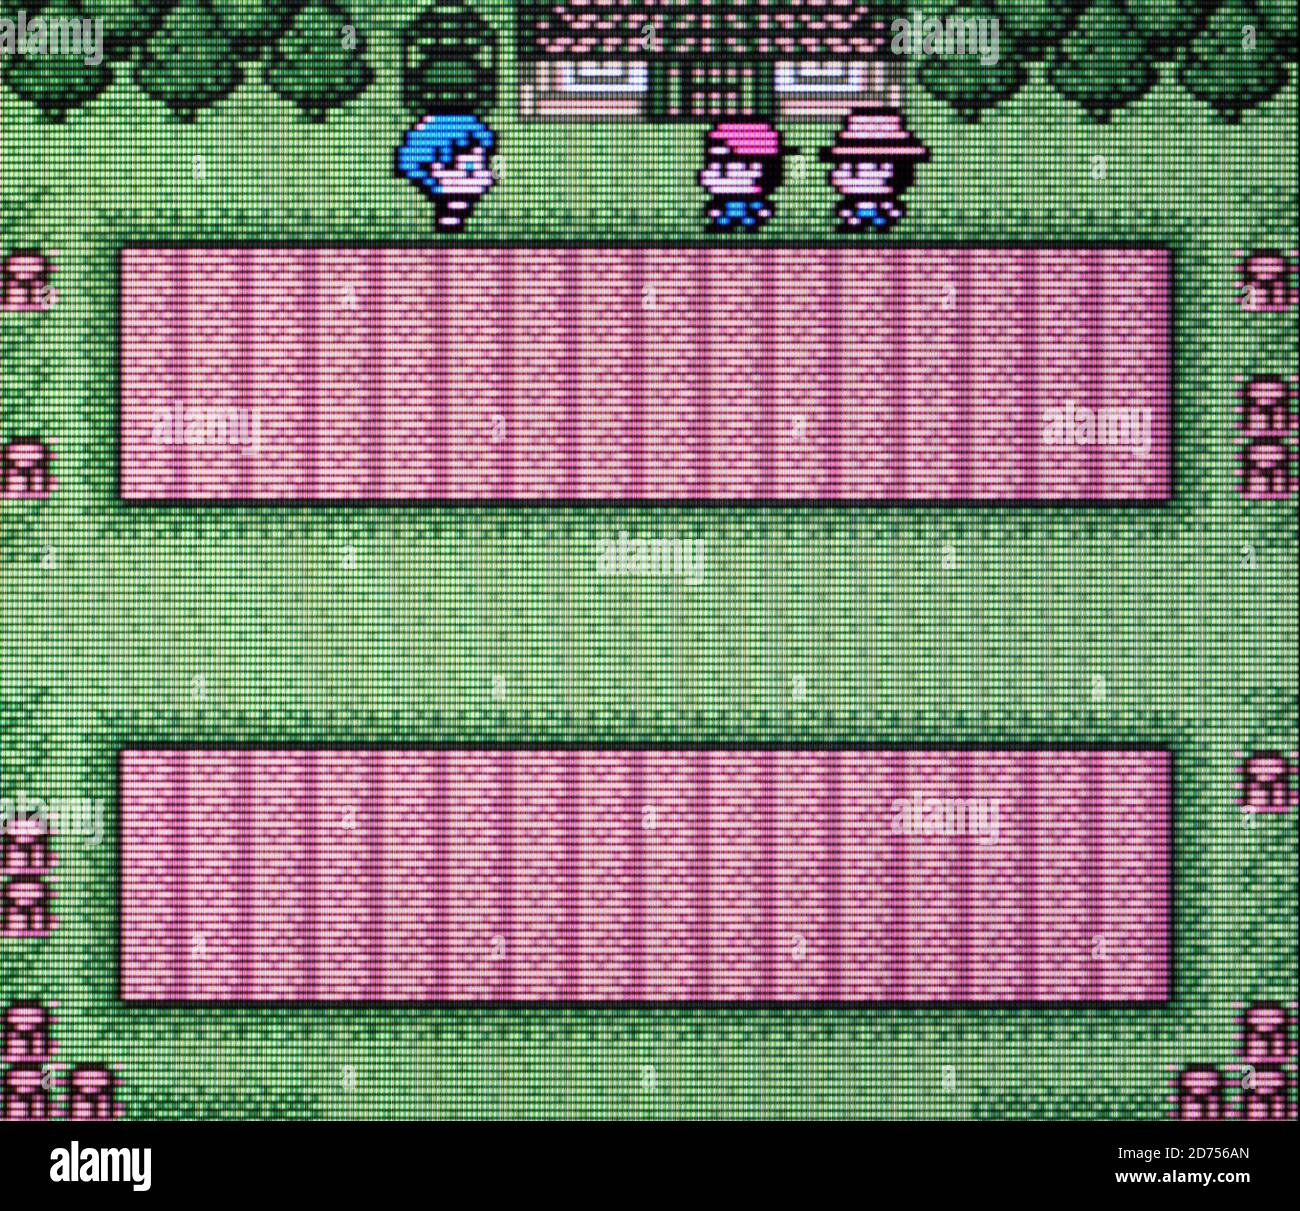 Leggenda del fiume King 2 - Nintendo Game Boy Videogioco a colori - solo per uso editoriale Foto Stock